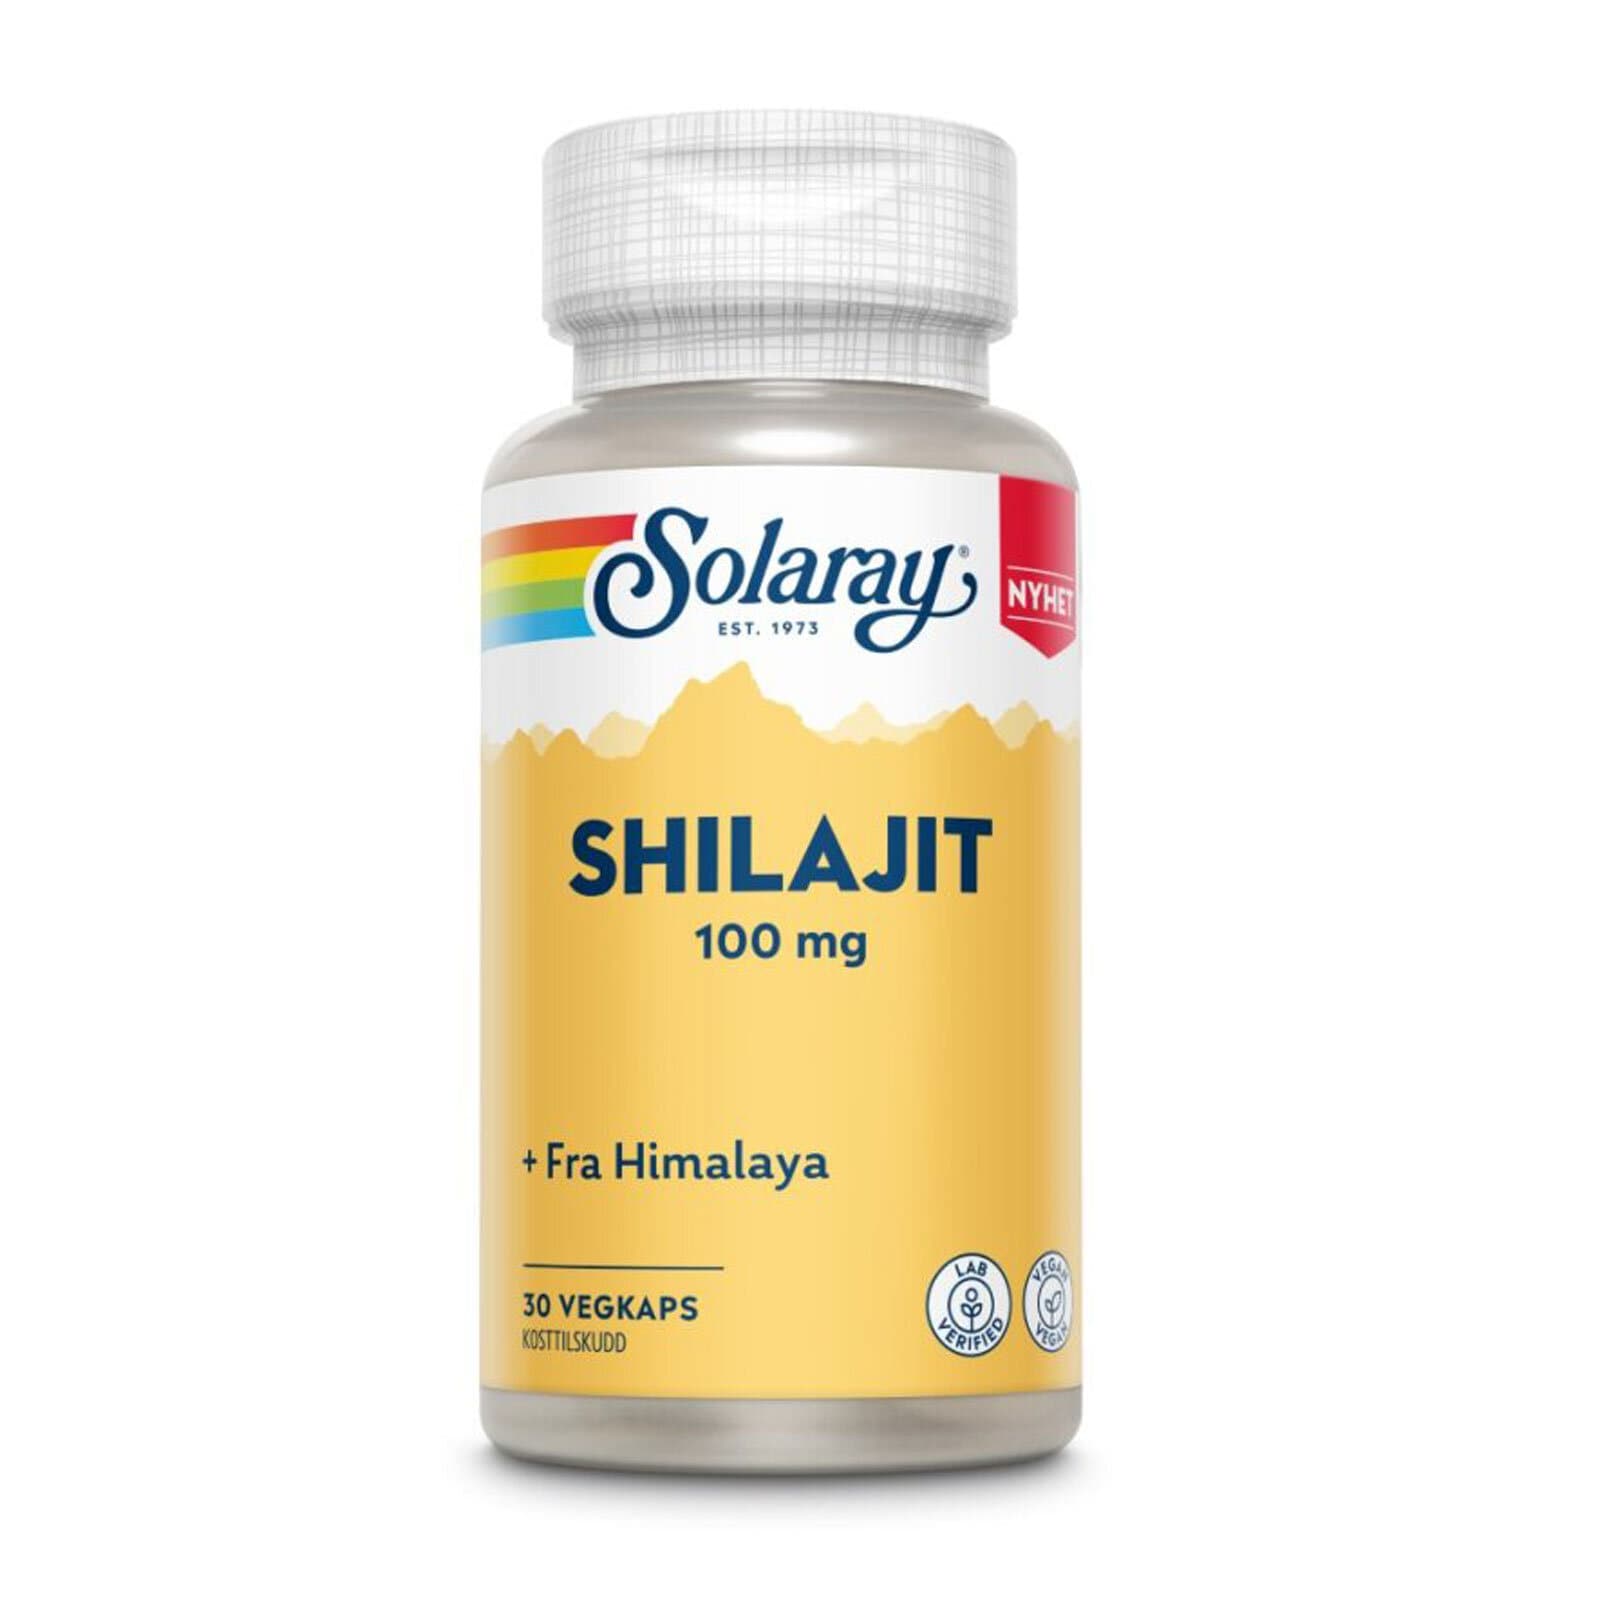 Solaray Shilajit